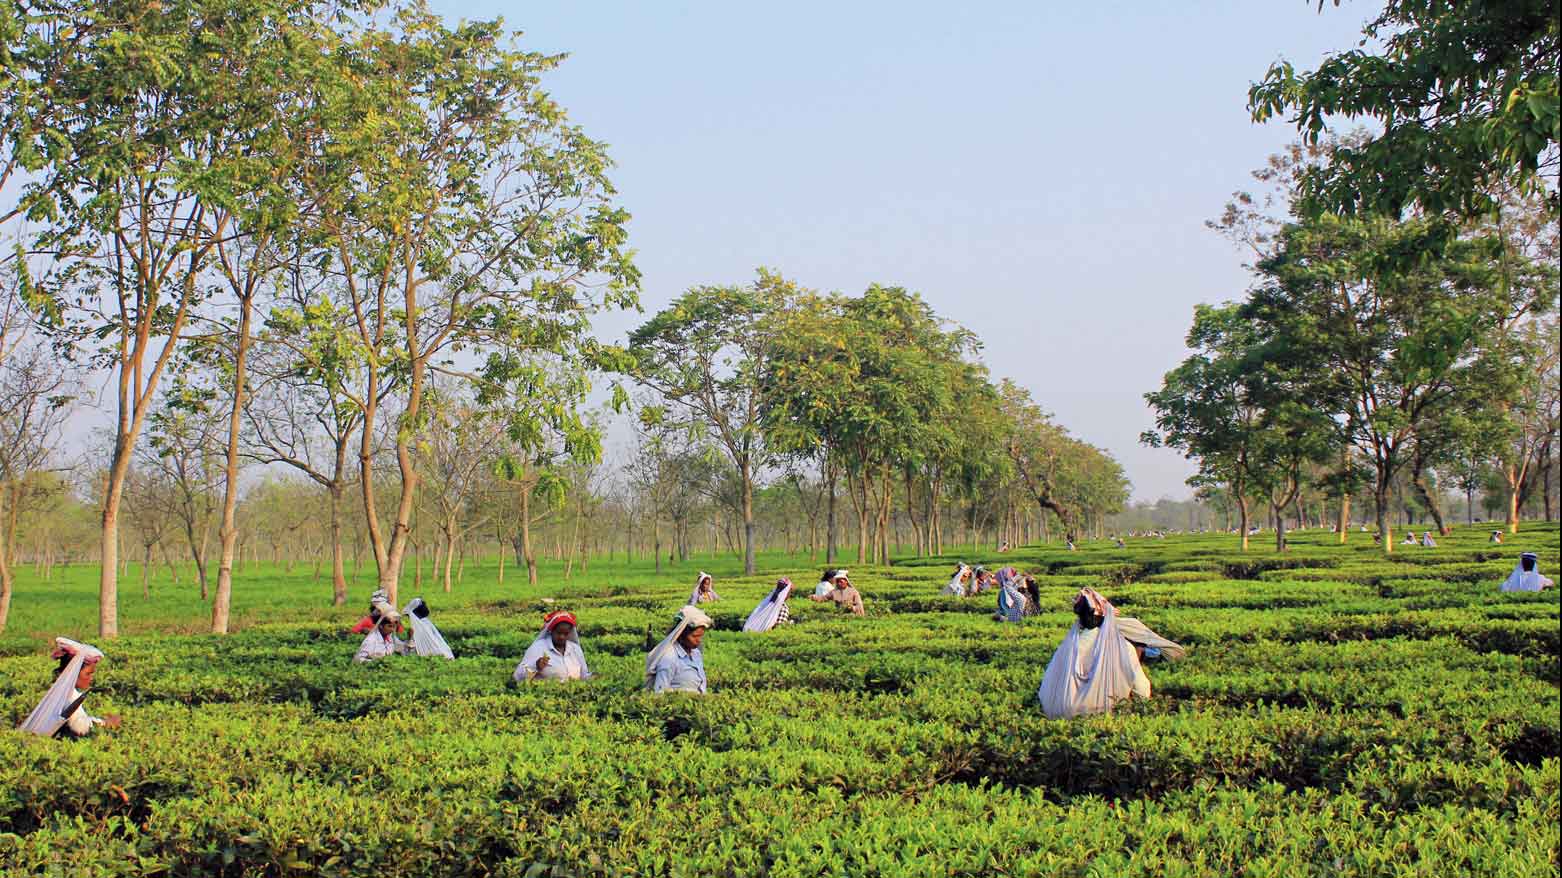 Workers at a Terai tea garden